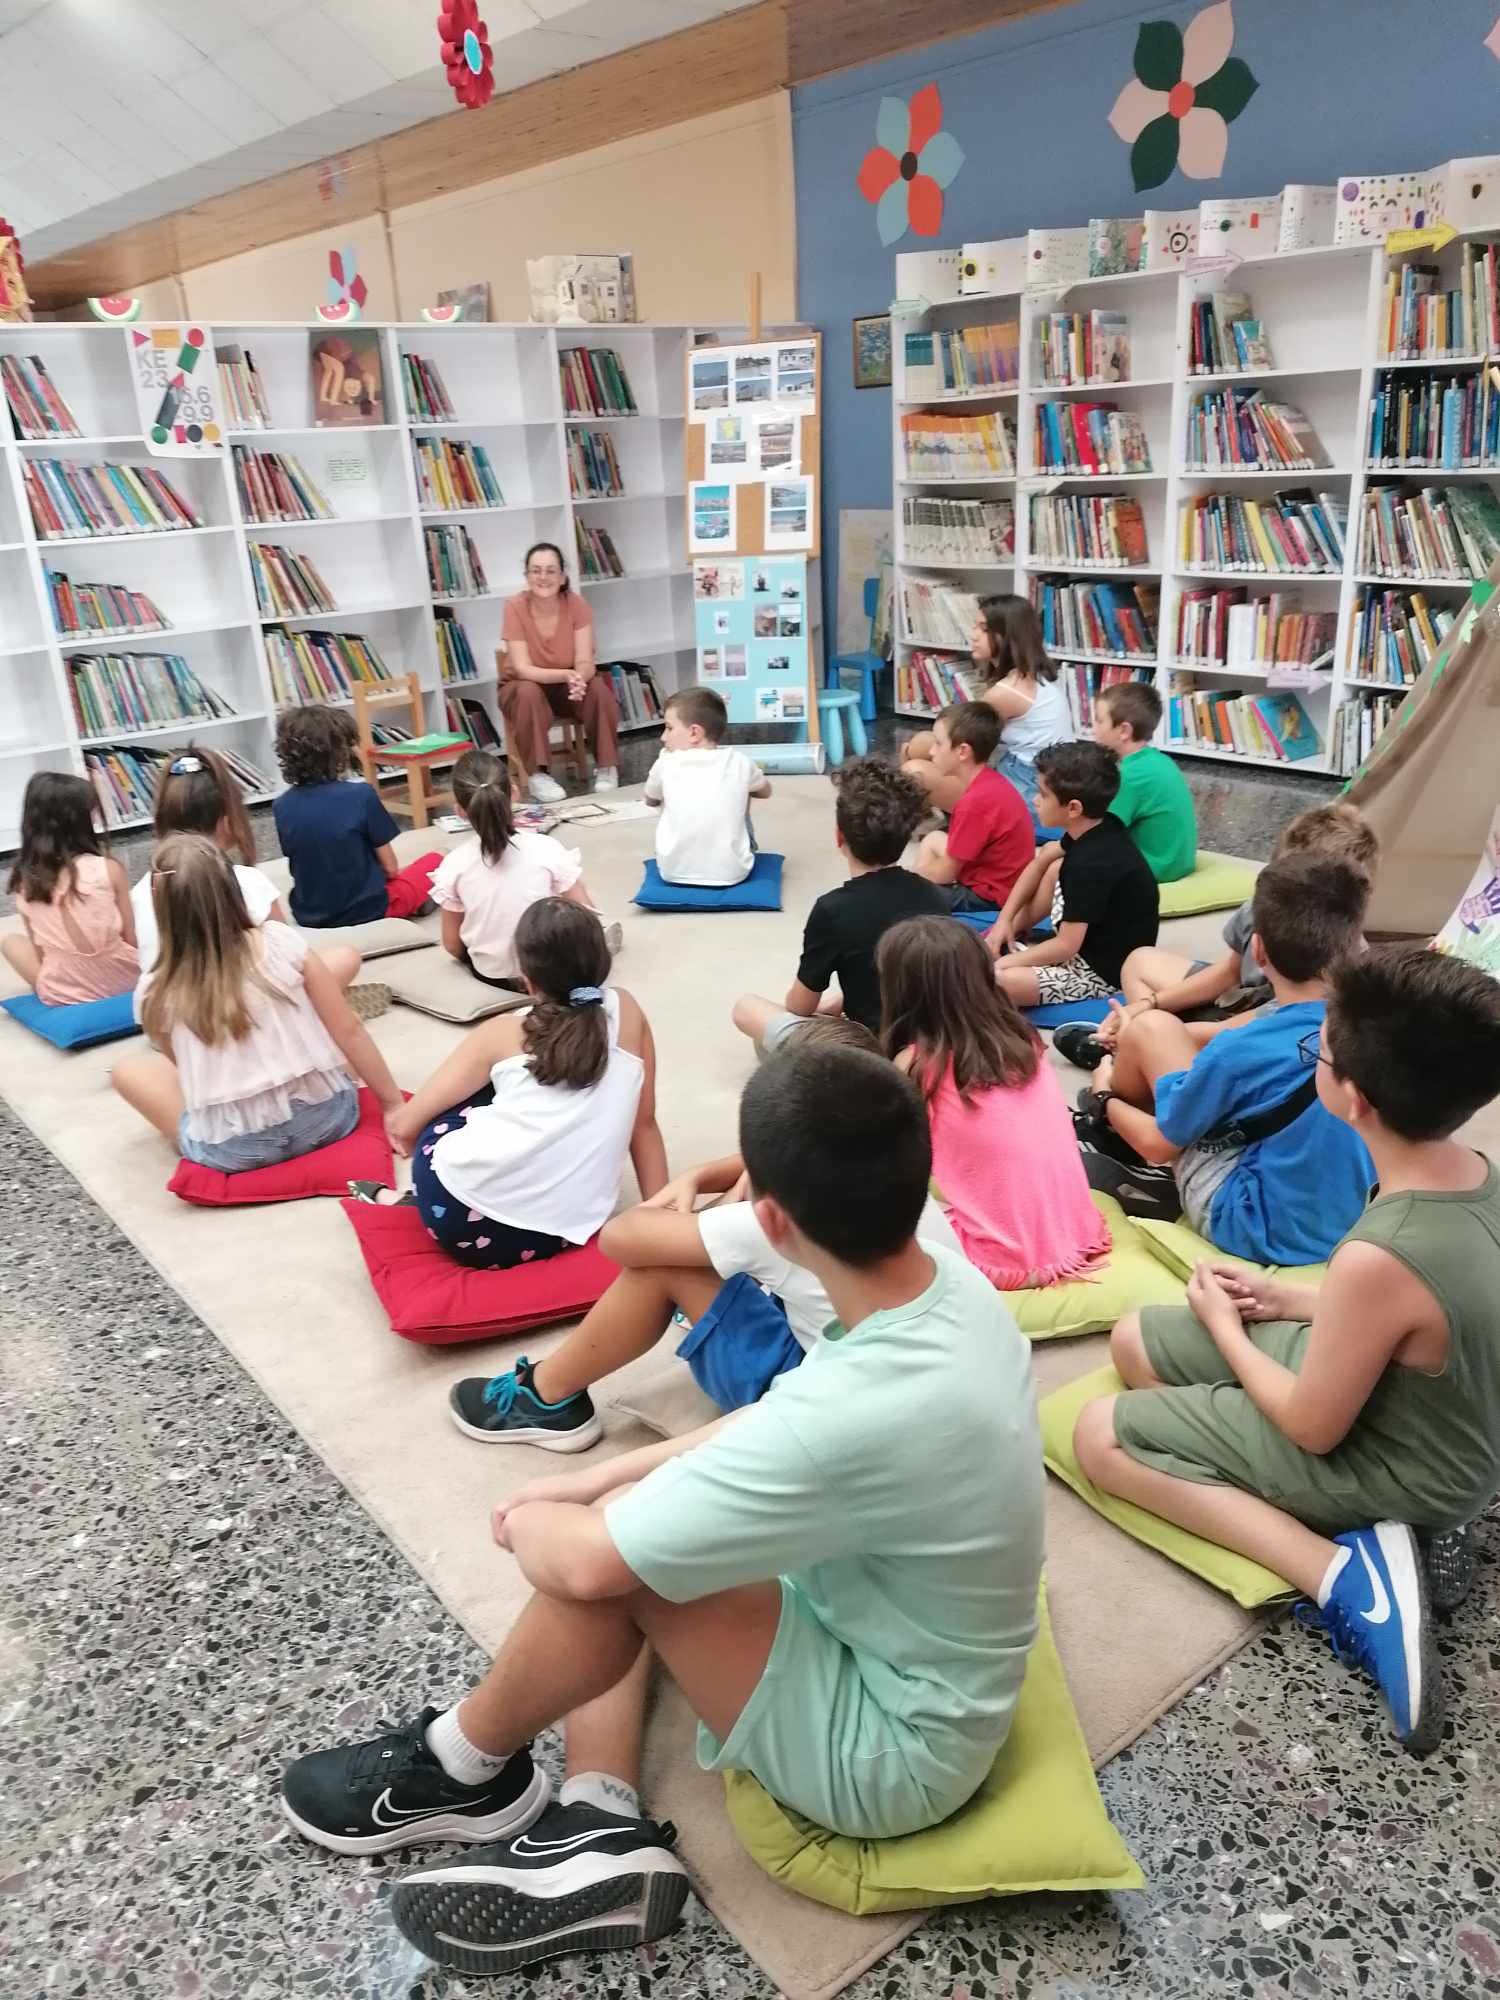 Ολοκληρώθηκε η Καλοκαιρινή Εκστρατεία Ανάγνωσης στη Δημοτική Βιβλιοθήκη Λάρισας “Αλέξης Μπατζανούλης”